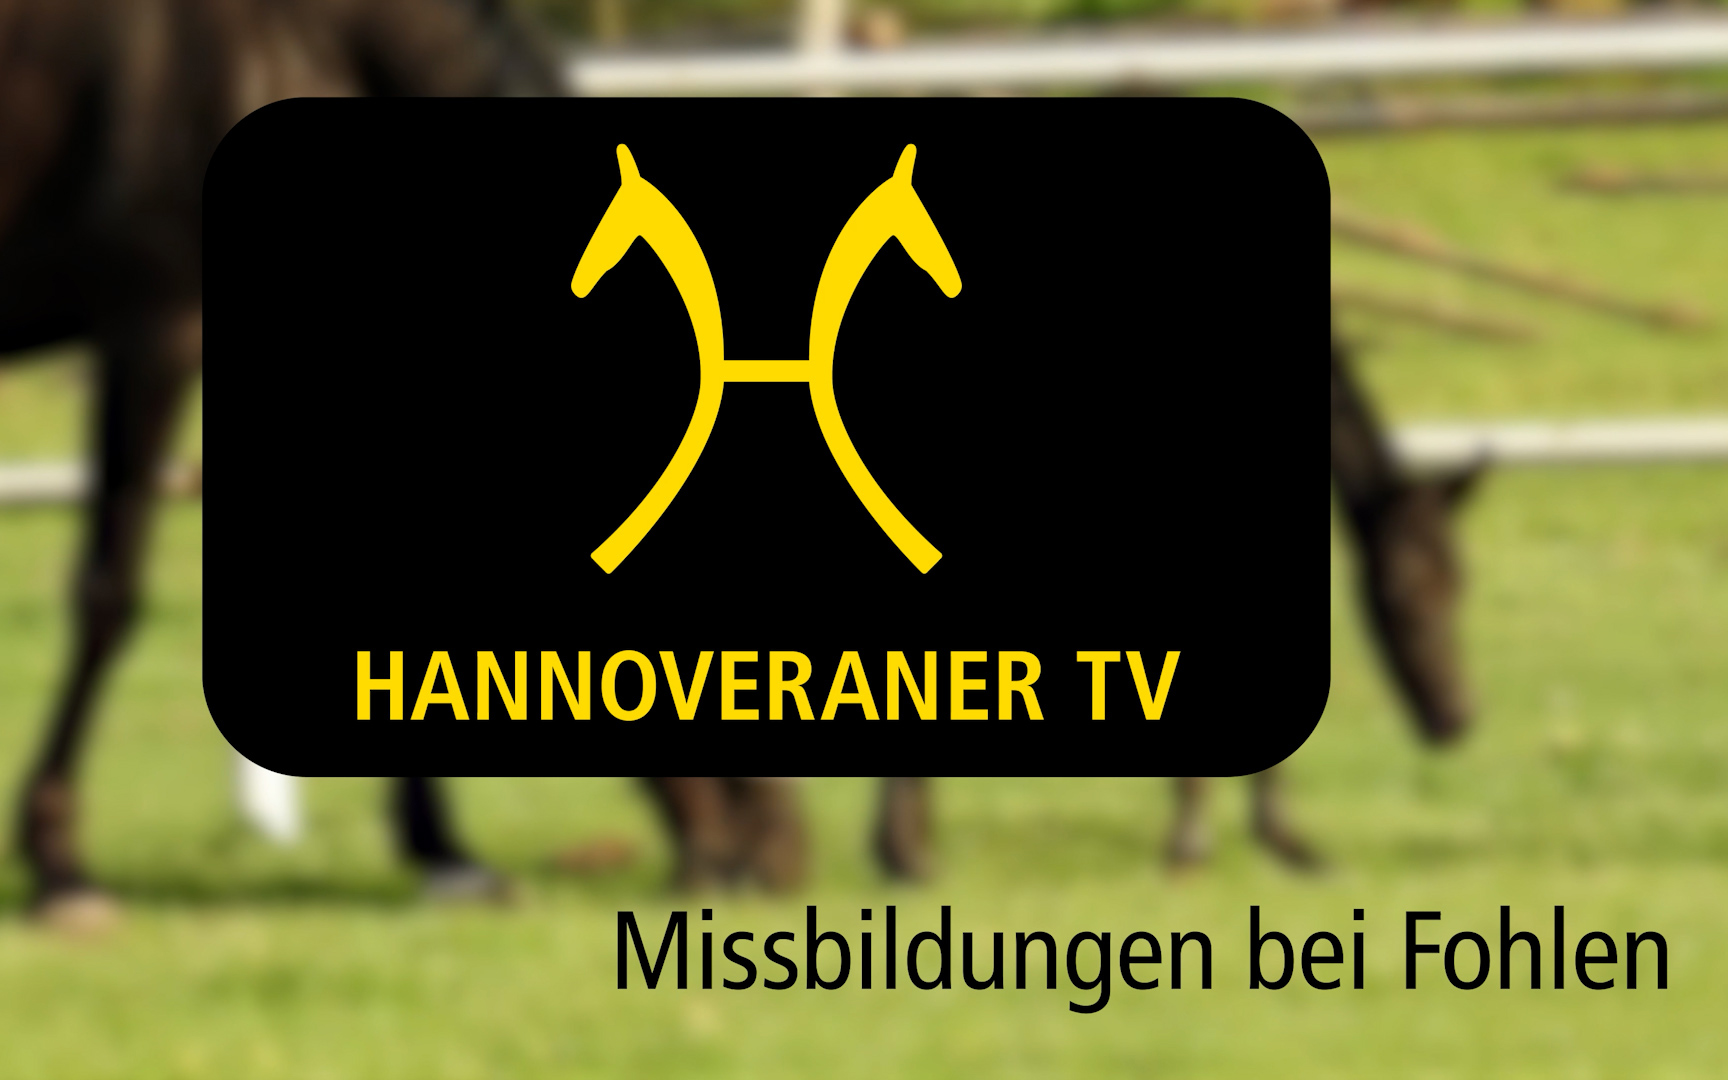 Missbildungen bei Fohlen - Hannoveraner TV